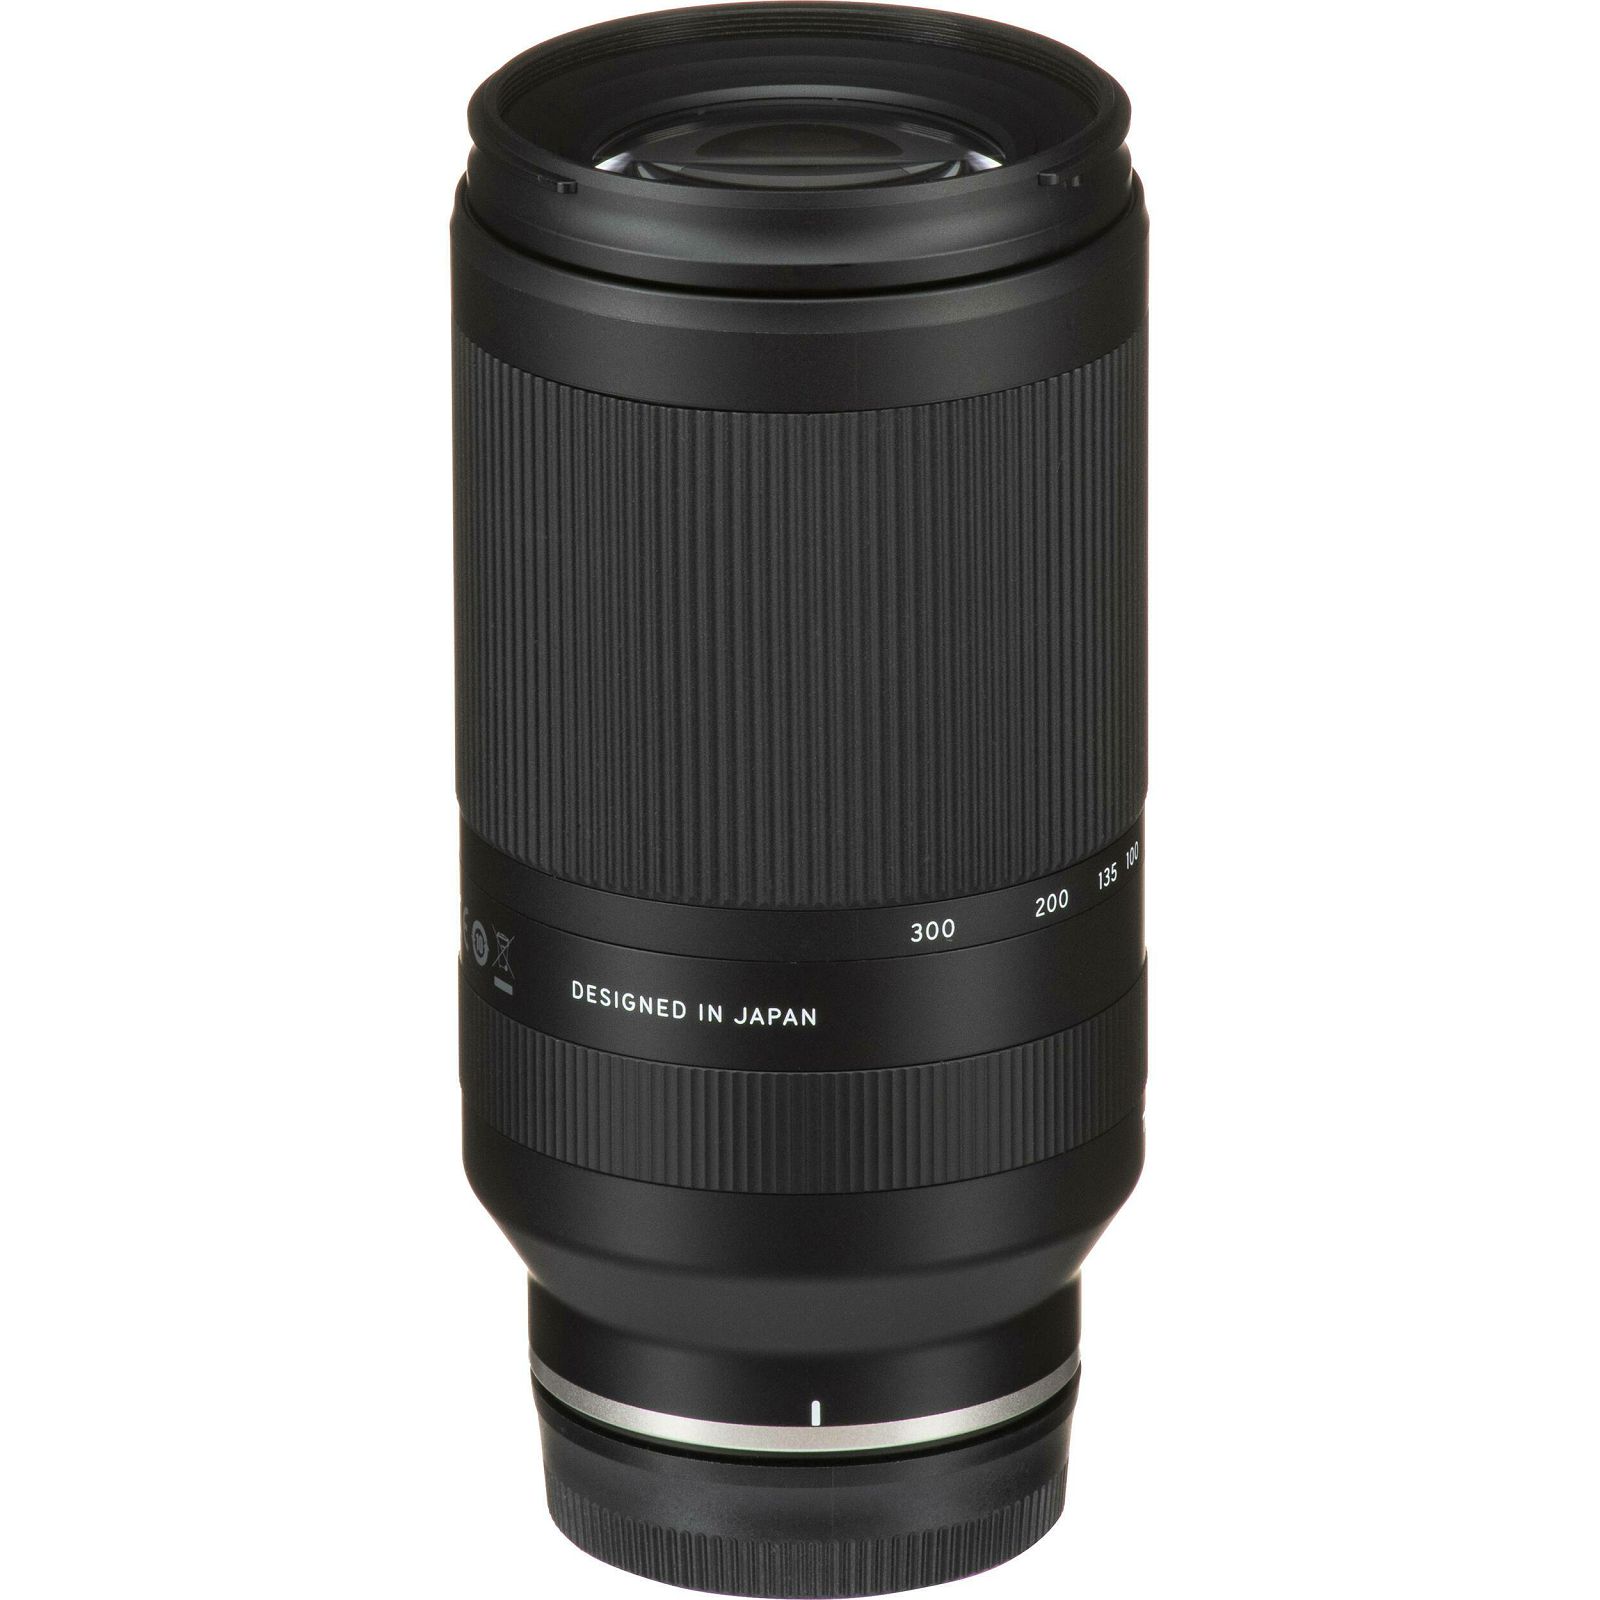 Tamron 70-300mm f/4.5-6.3 Di III RXD telefoto objektiv za Sony E-mount (A047SF)